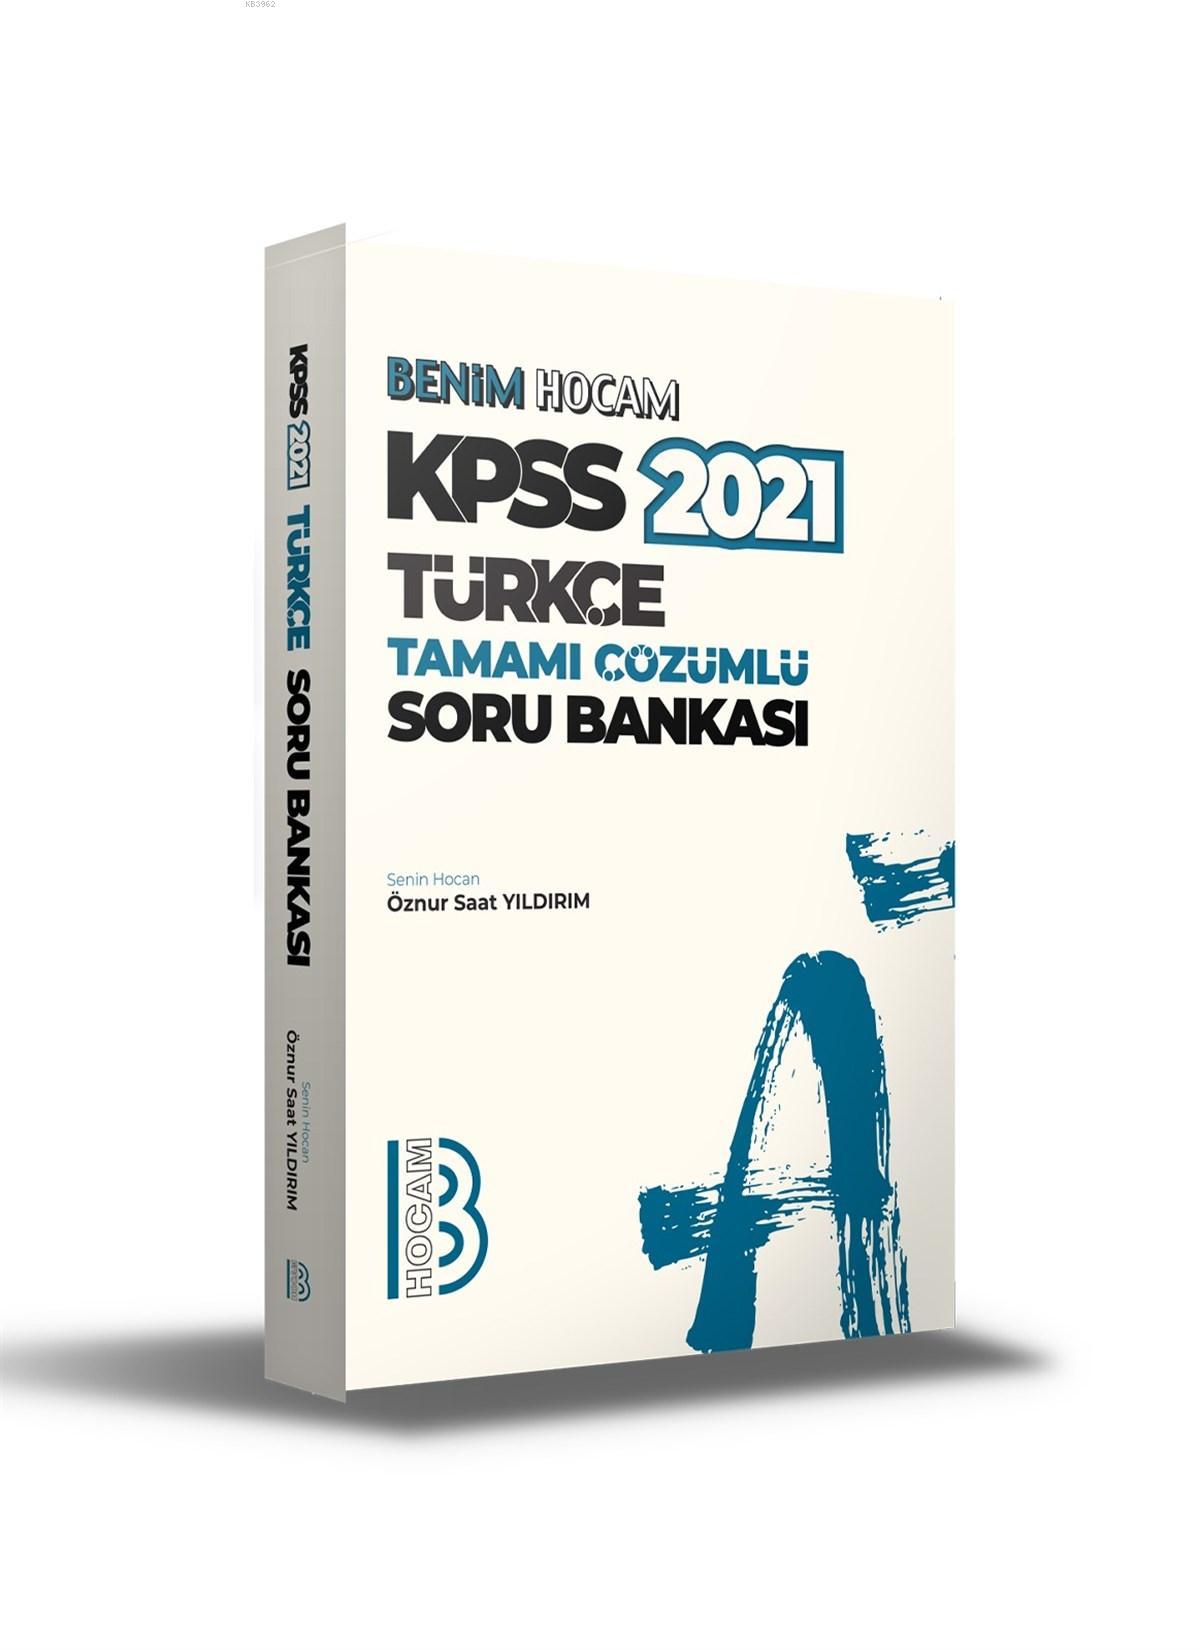 2021 KPSS Türkçe Tamamı Çözümlü Soru Bankası Benim Hocam Yayınları